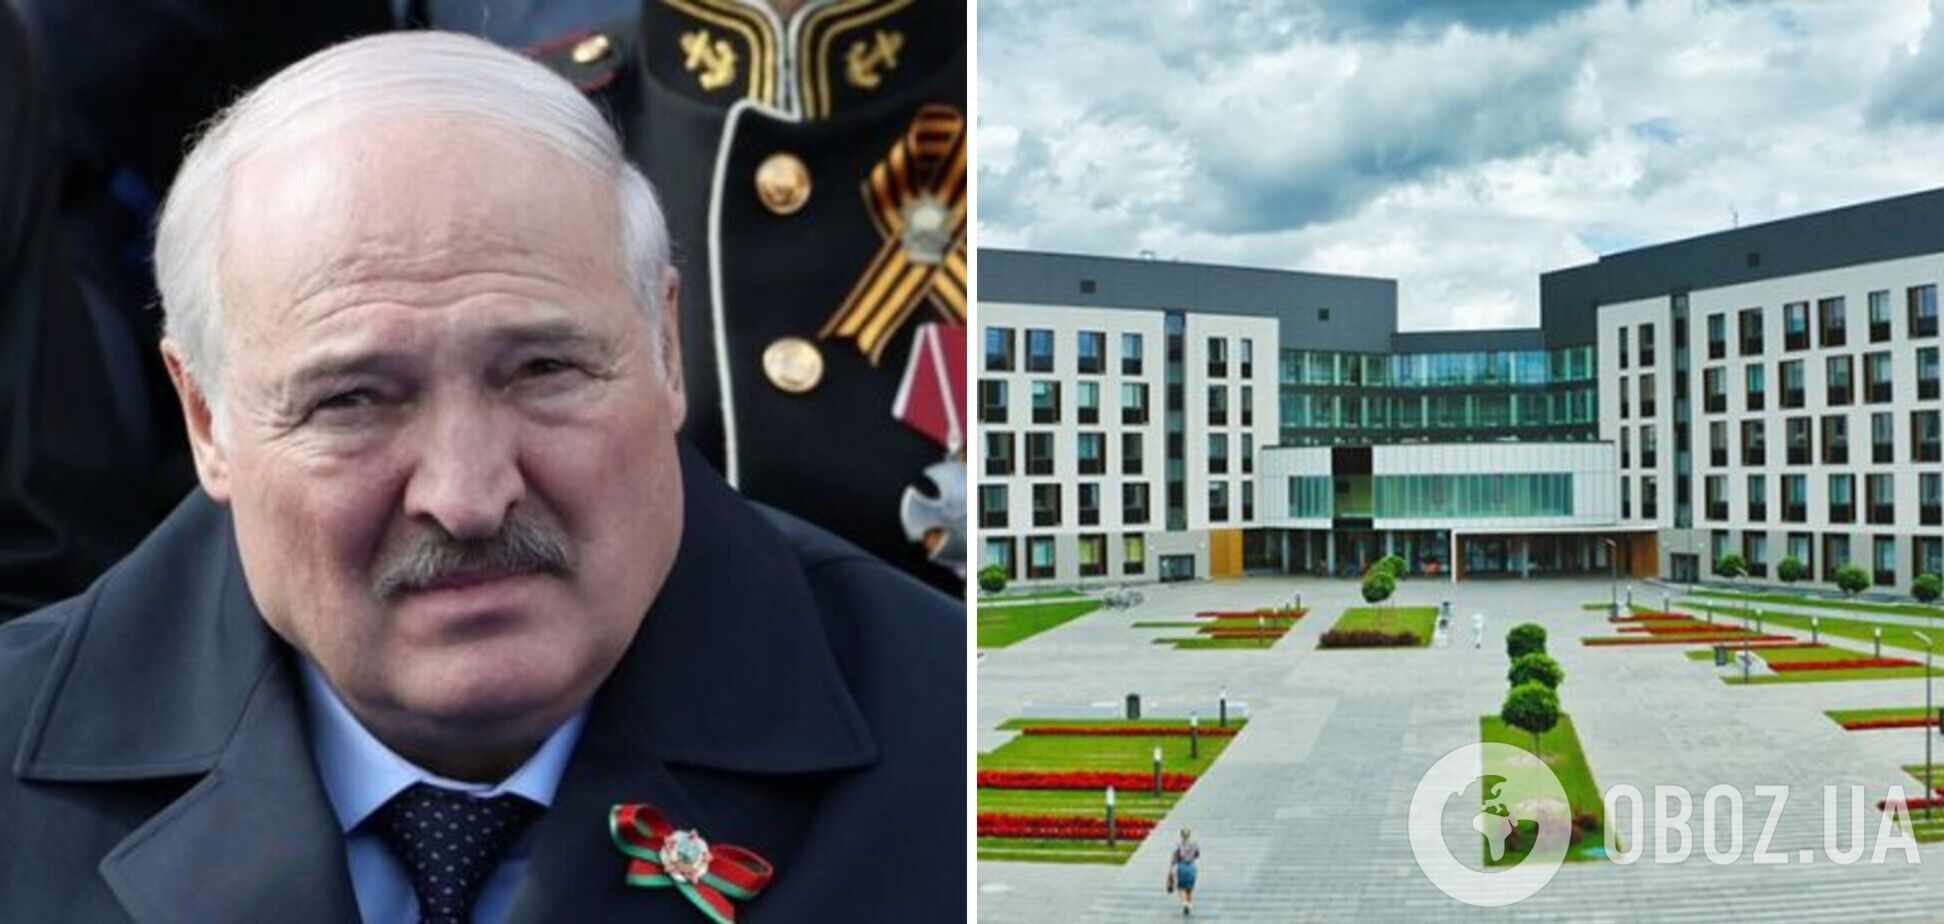 Лукашенко приїхав до президентської клініки у Дроздах після чуток про проблеми зі здоров'ям –  ЗМІ  